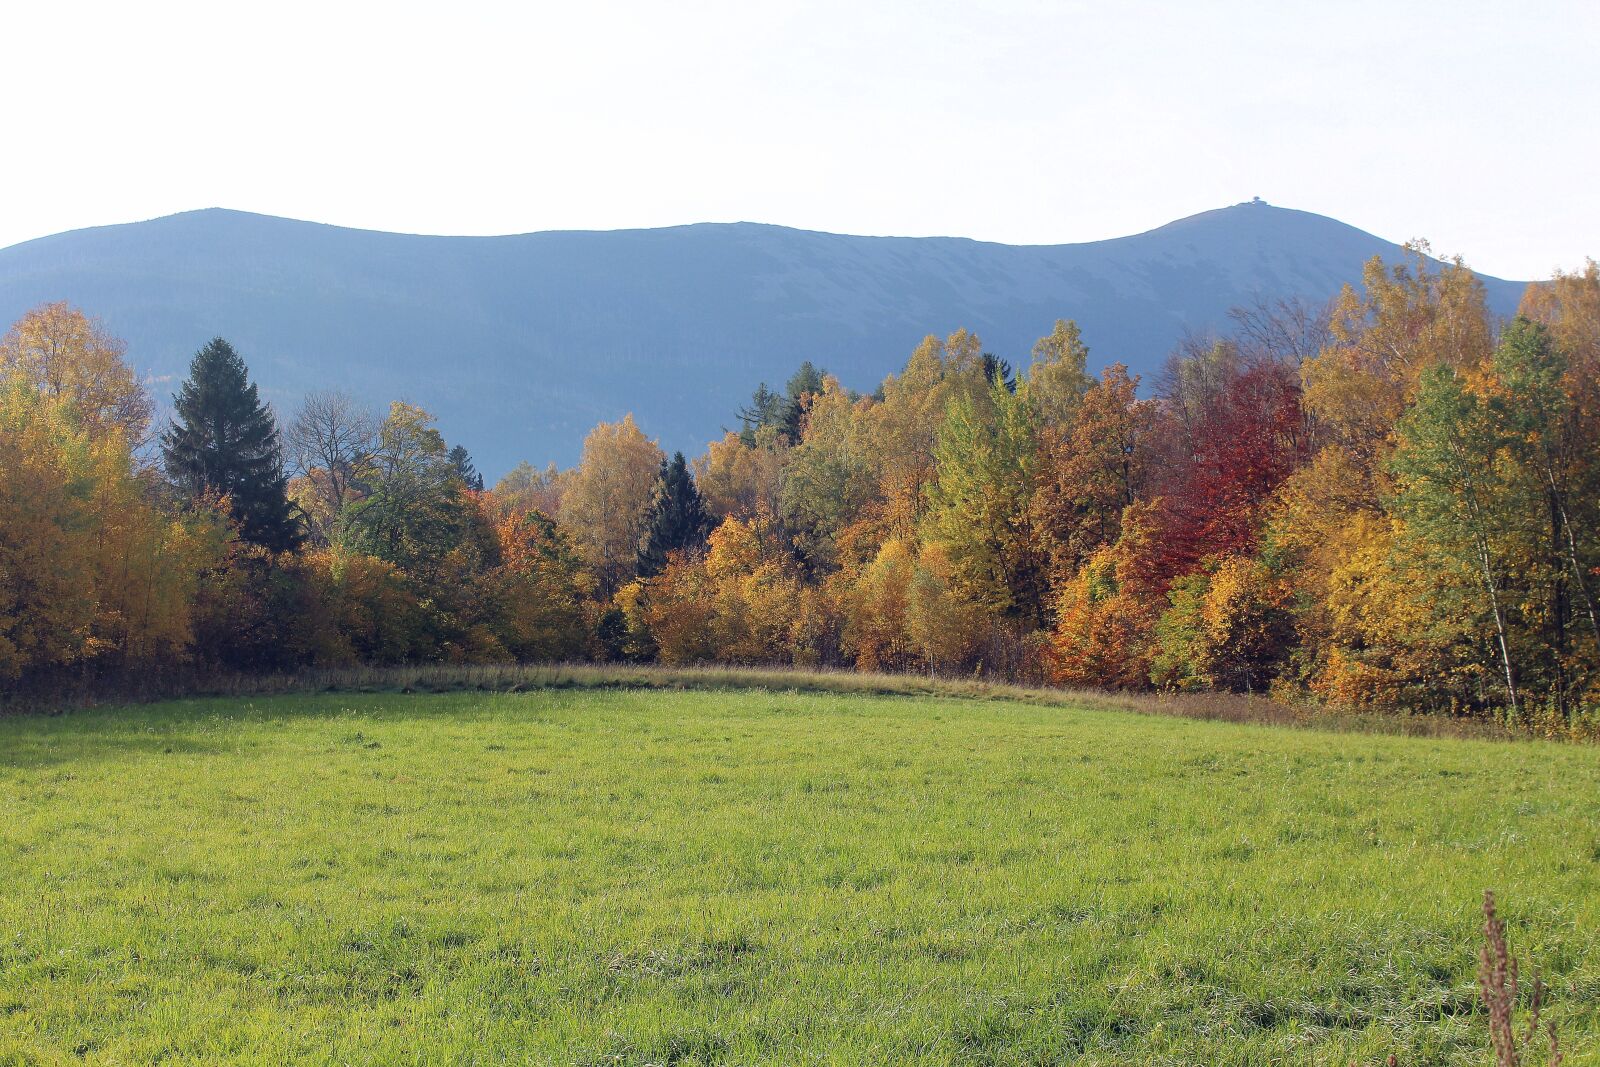 Canon EOS 1200D (EOS Rebel T5 / EOS Kiss X70 / EOS Hi) sample photo. Autumn, landscape, colors photography